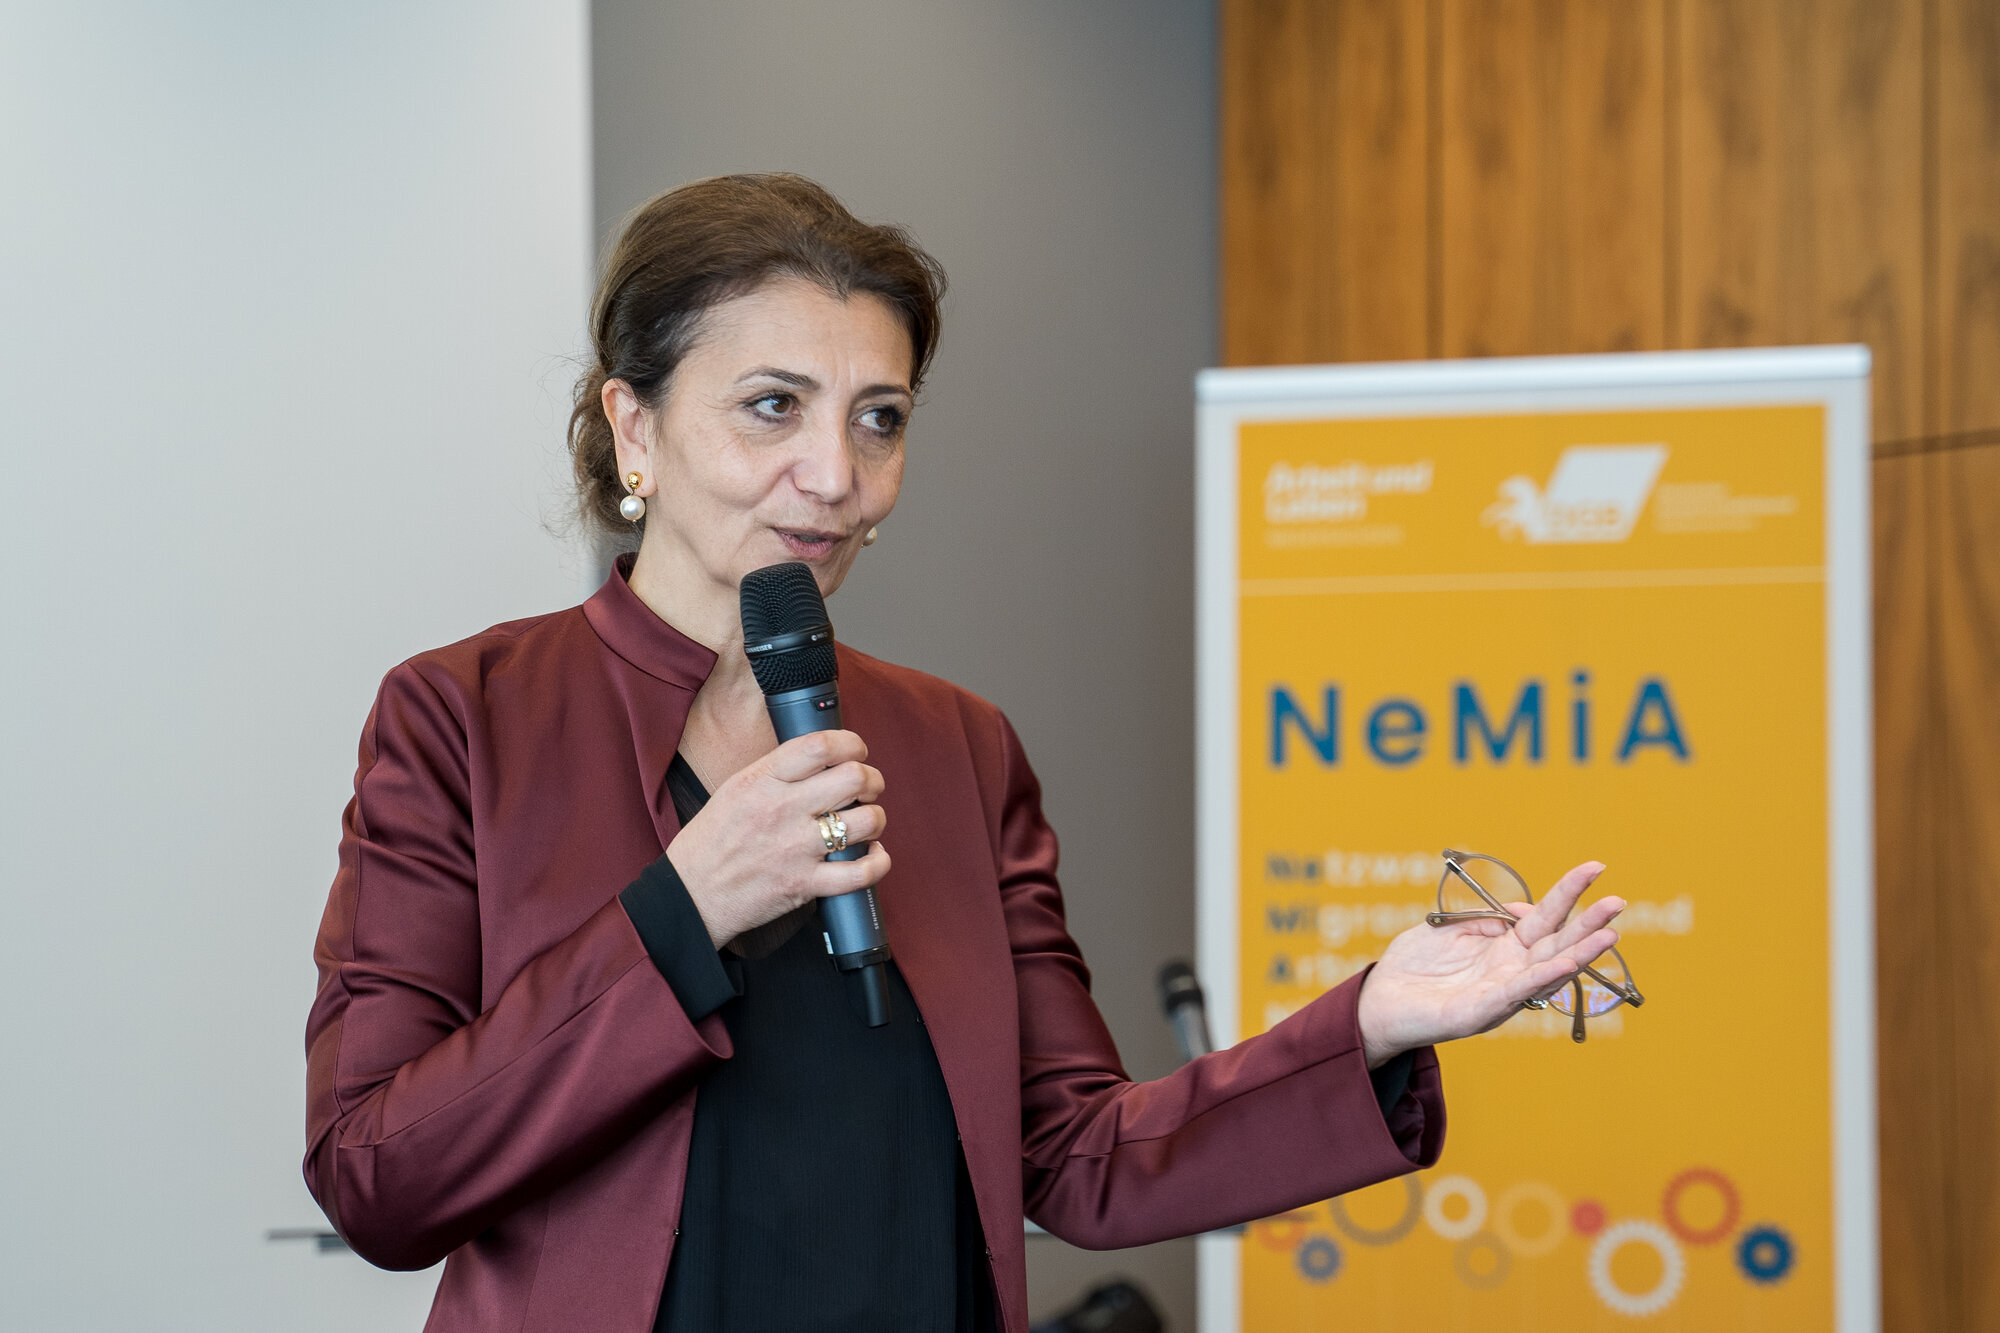 Eine Frau (Naciye Celebi-Bektas) hält ein Mikrophon in der Hand und hält eine Rede. Hinter ihr ist das Plakat des Netzwerkes NeMiA zu sehen.